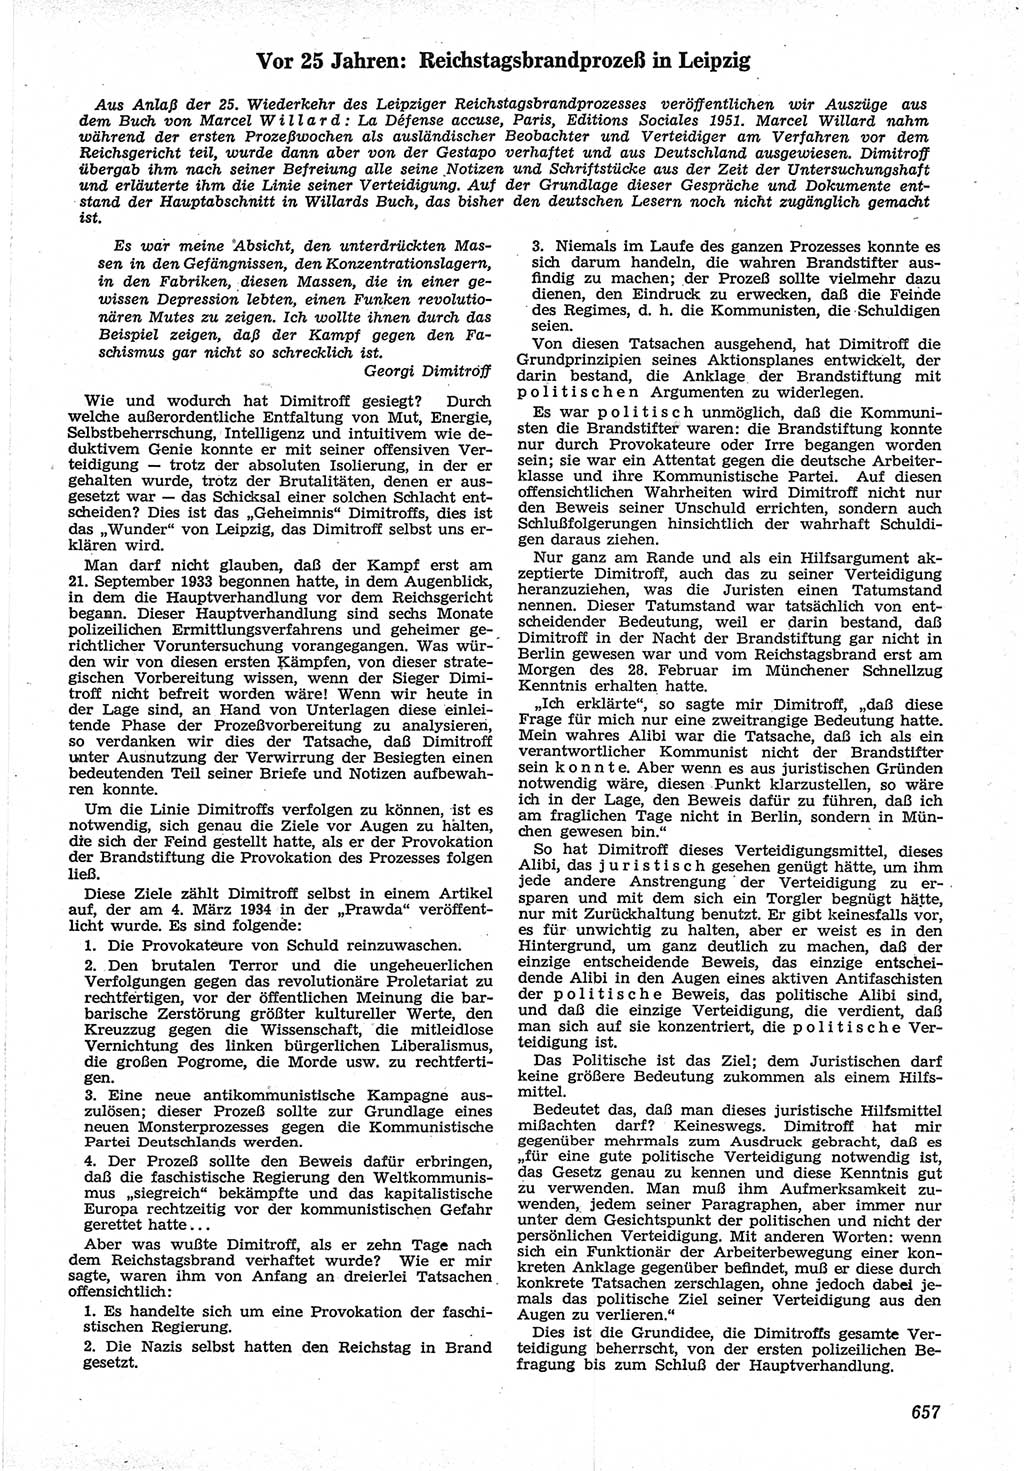 Neue Justiz (NJ), Zeitschrift für Recht und Rechtswissenschaft [Deutsche Demokratische Republik (DDR)], 12. Jahrgang 1958, Seite 657 (NJ DDR 1958, S. 657)